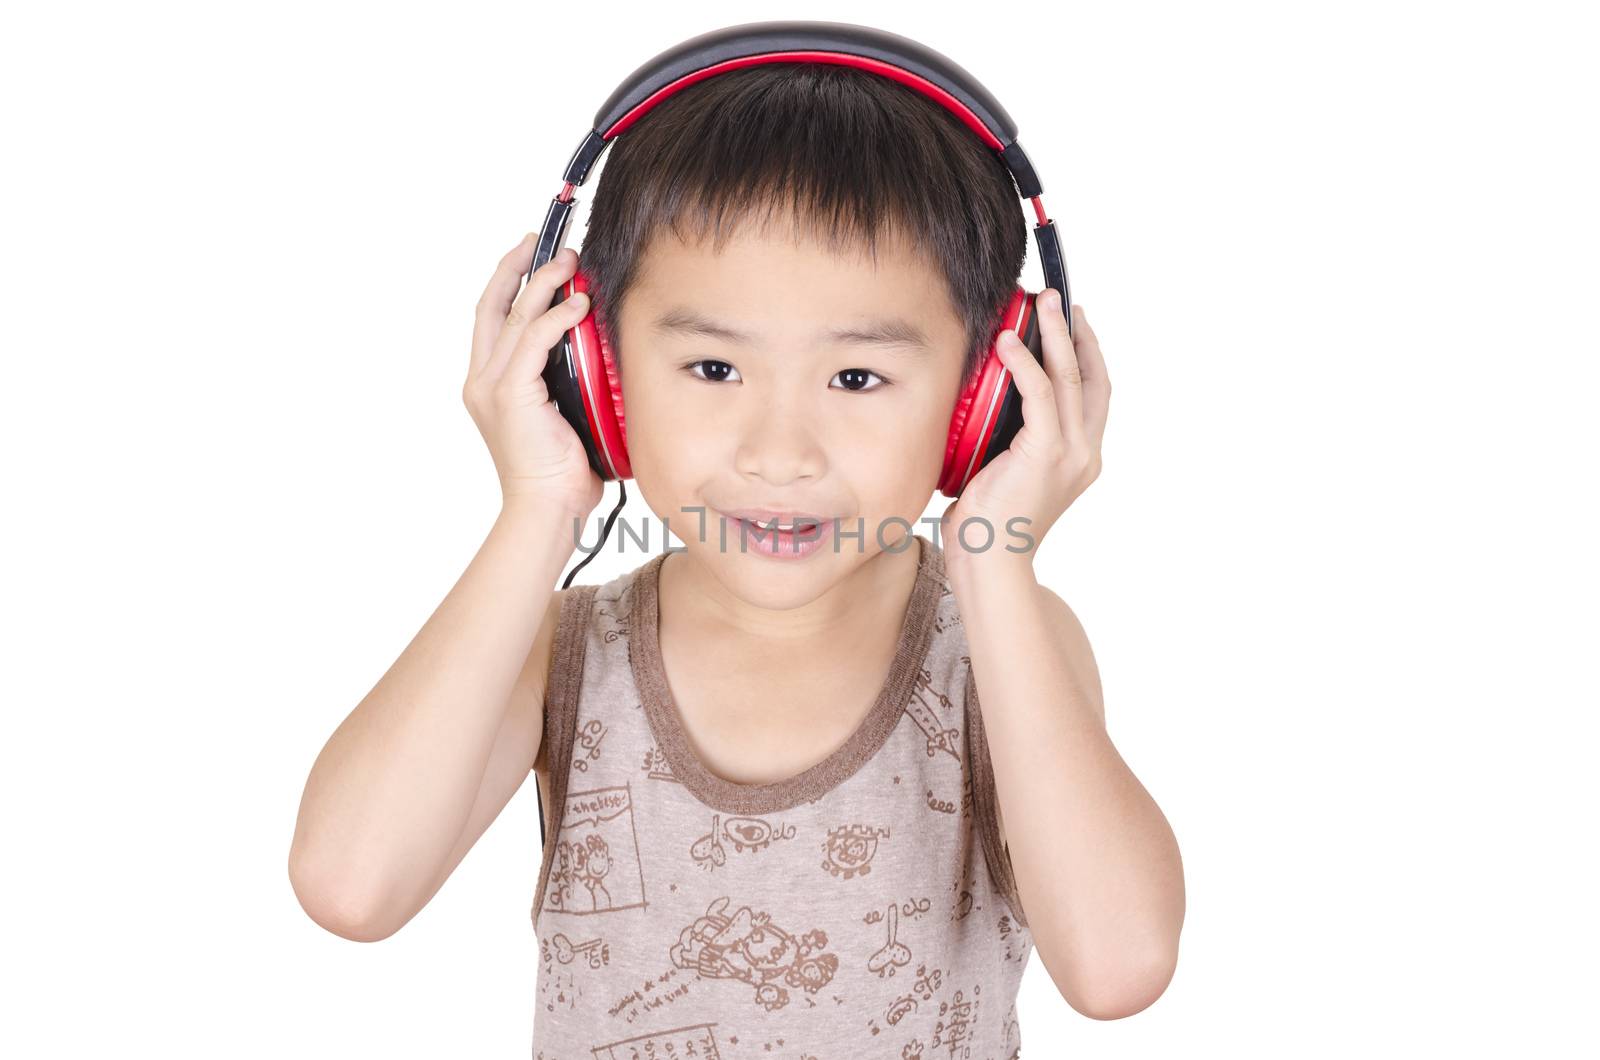 Cute children listen to music by FrankyLiu